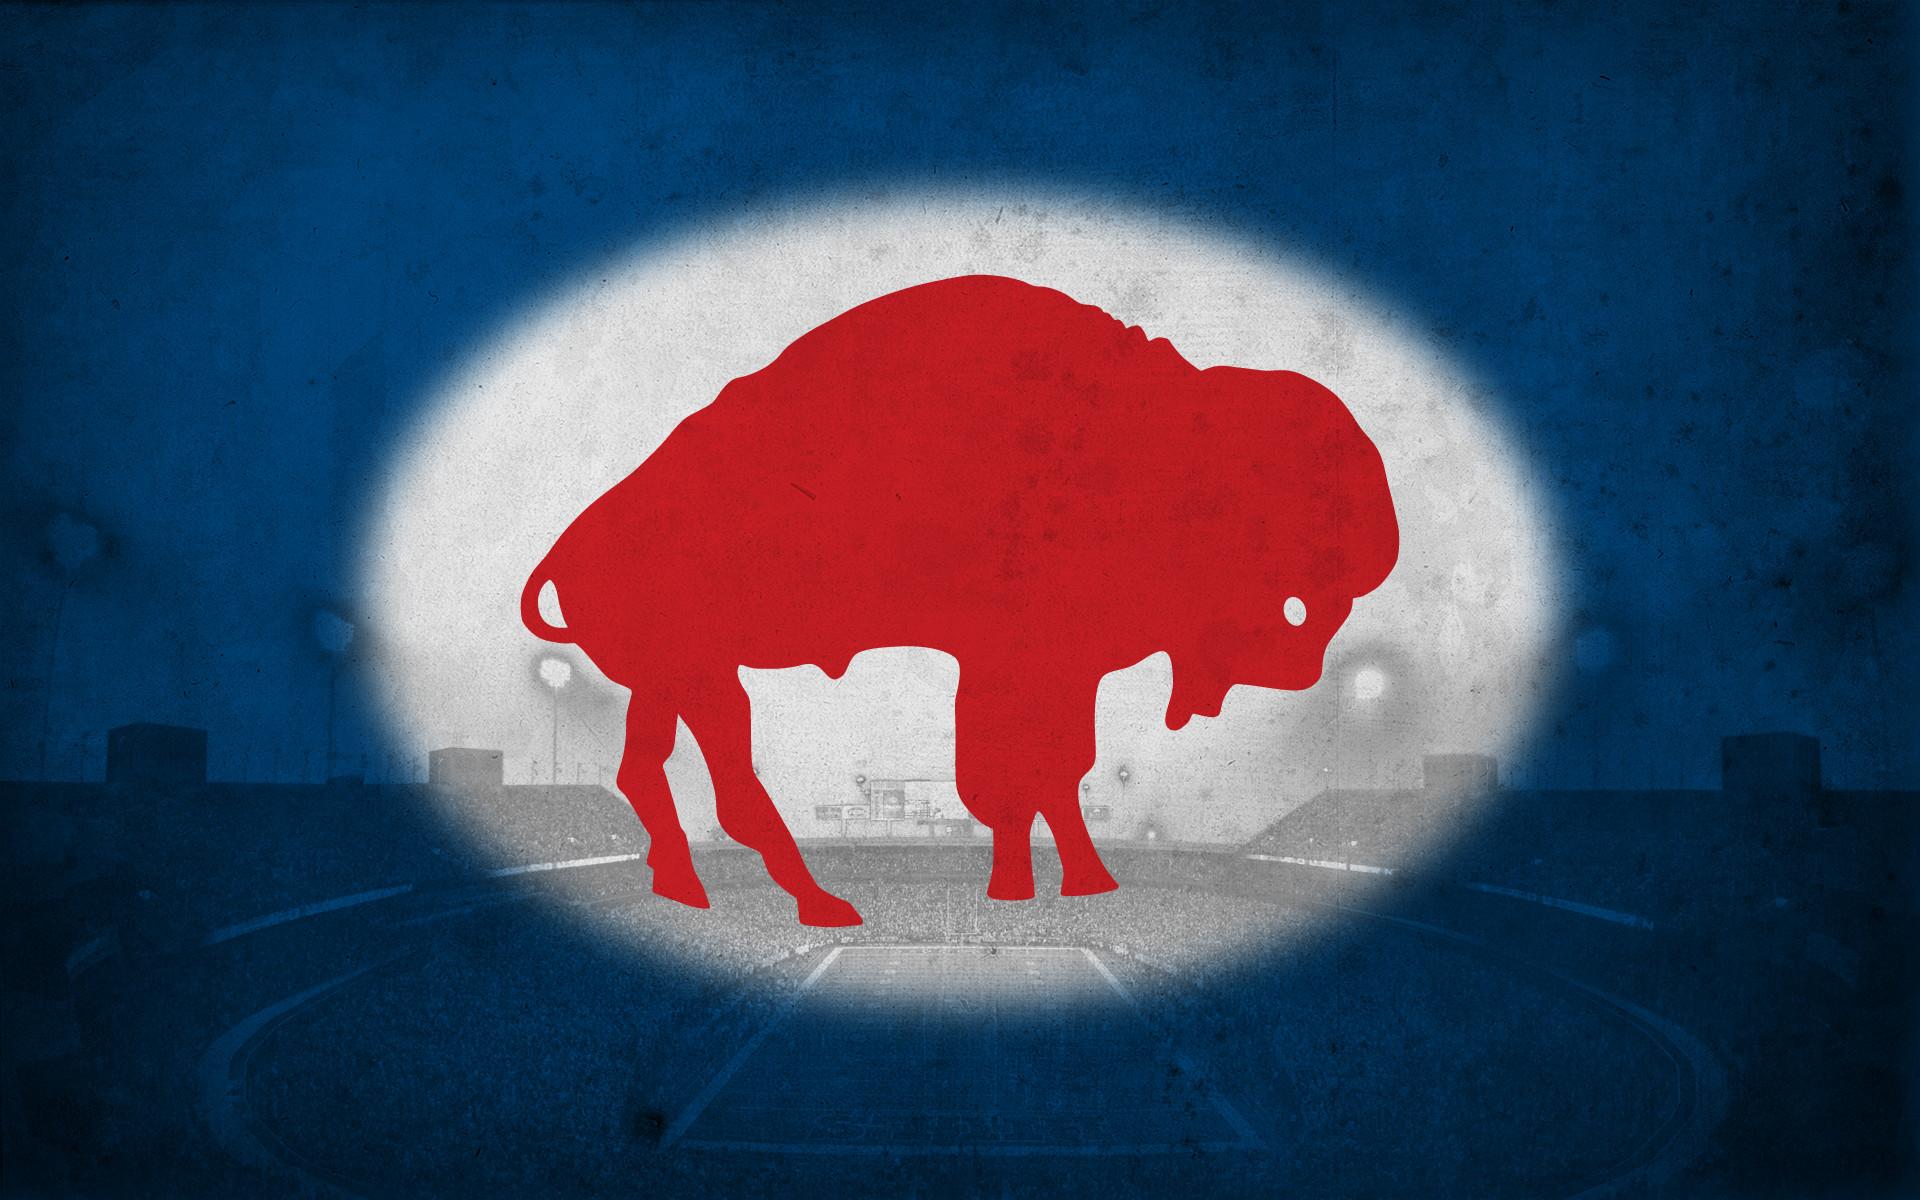 Buffalo Bills Wallpaper Screensaver